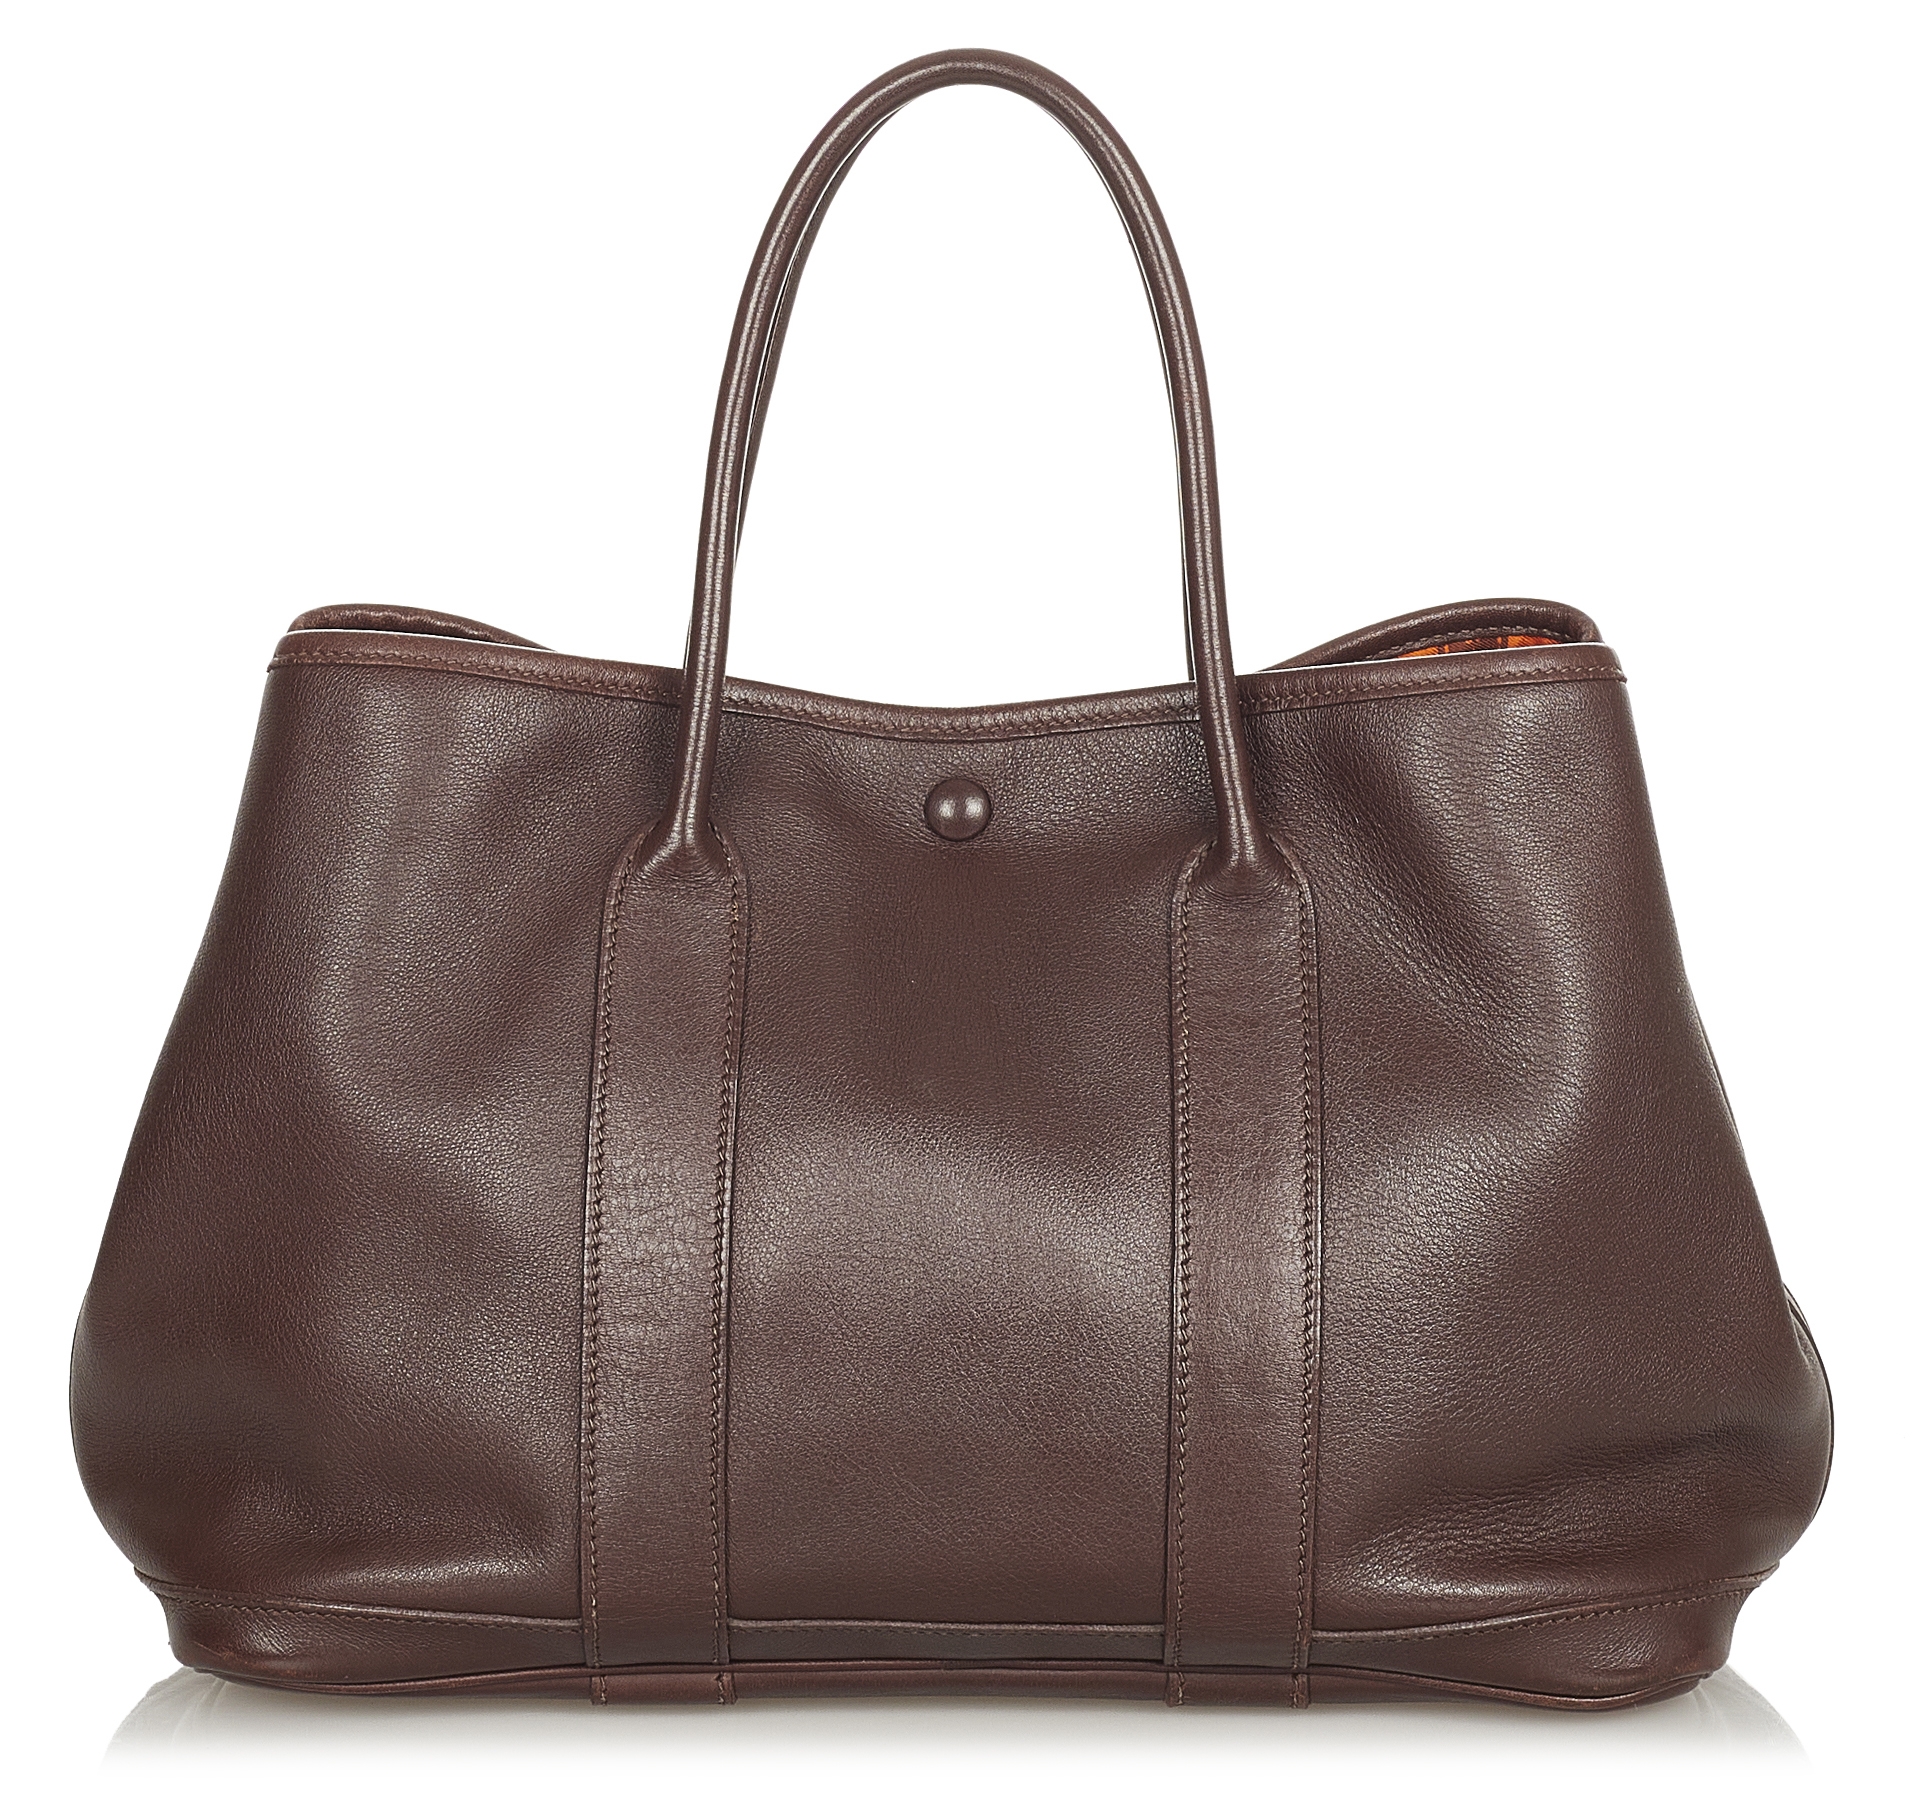 Hermes HERMES Garden Party Tote Bag ia Leather Brown Ladies Handbag